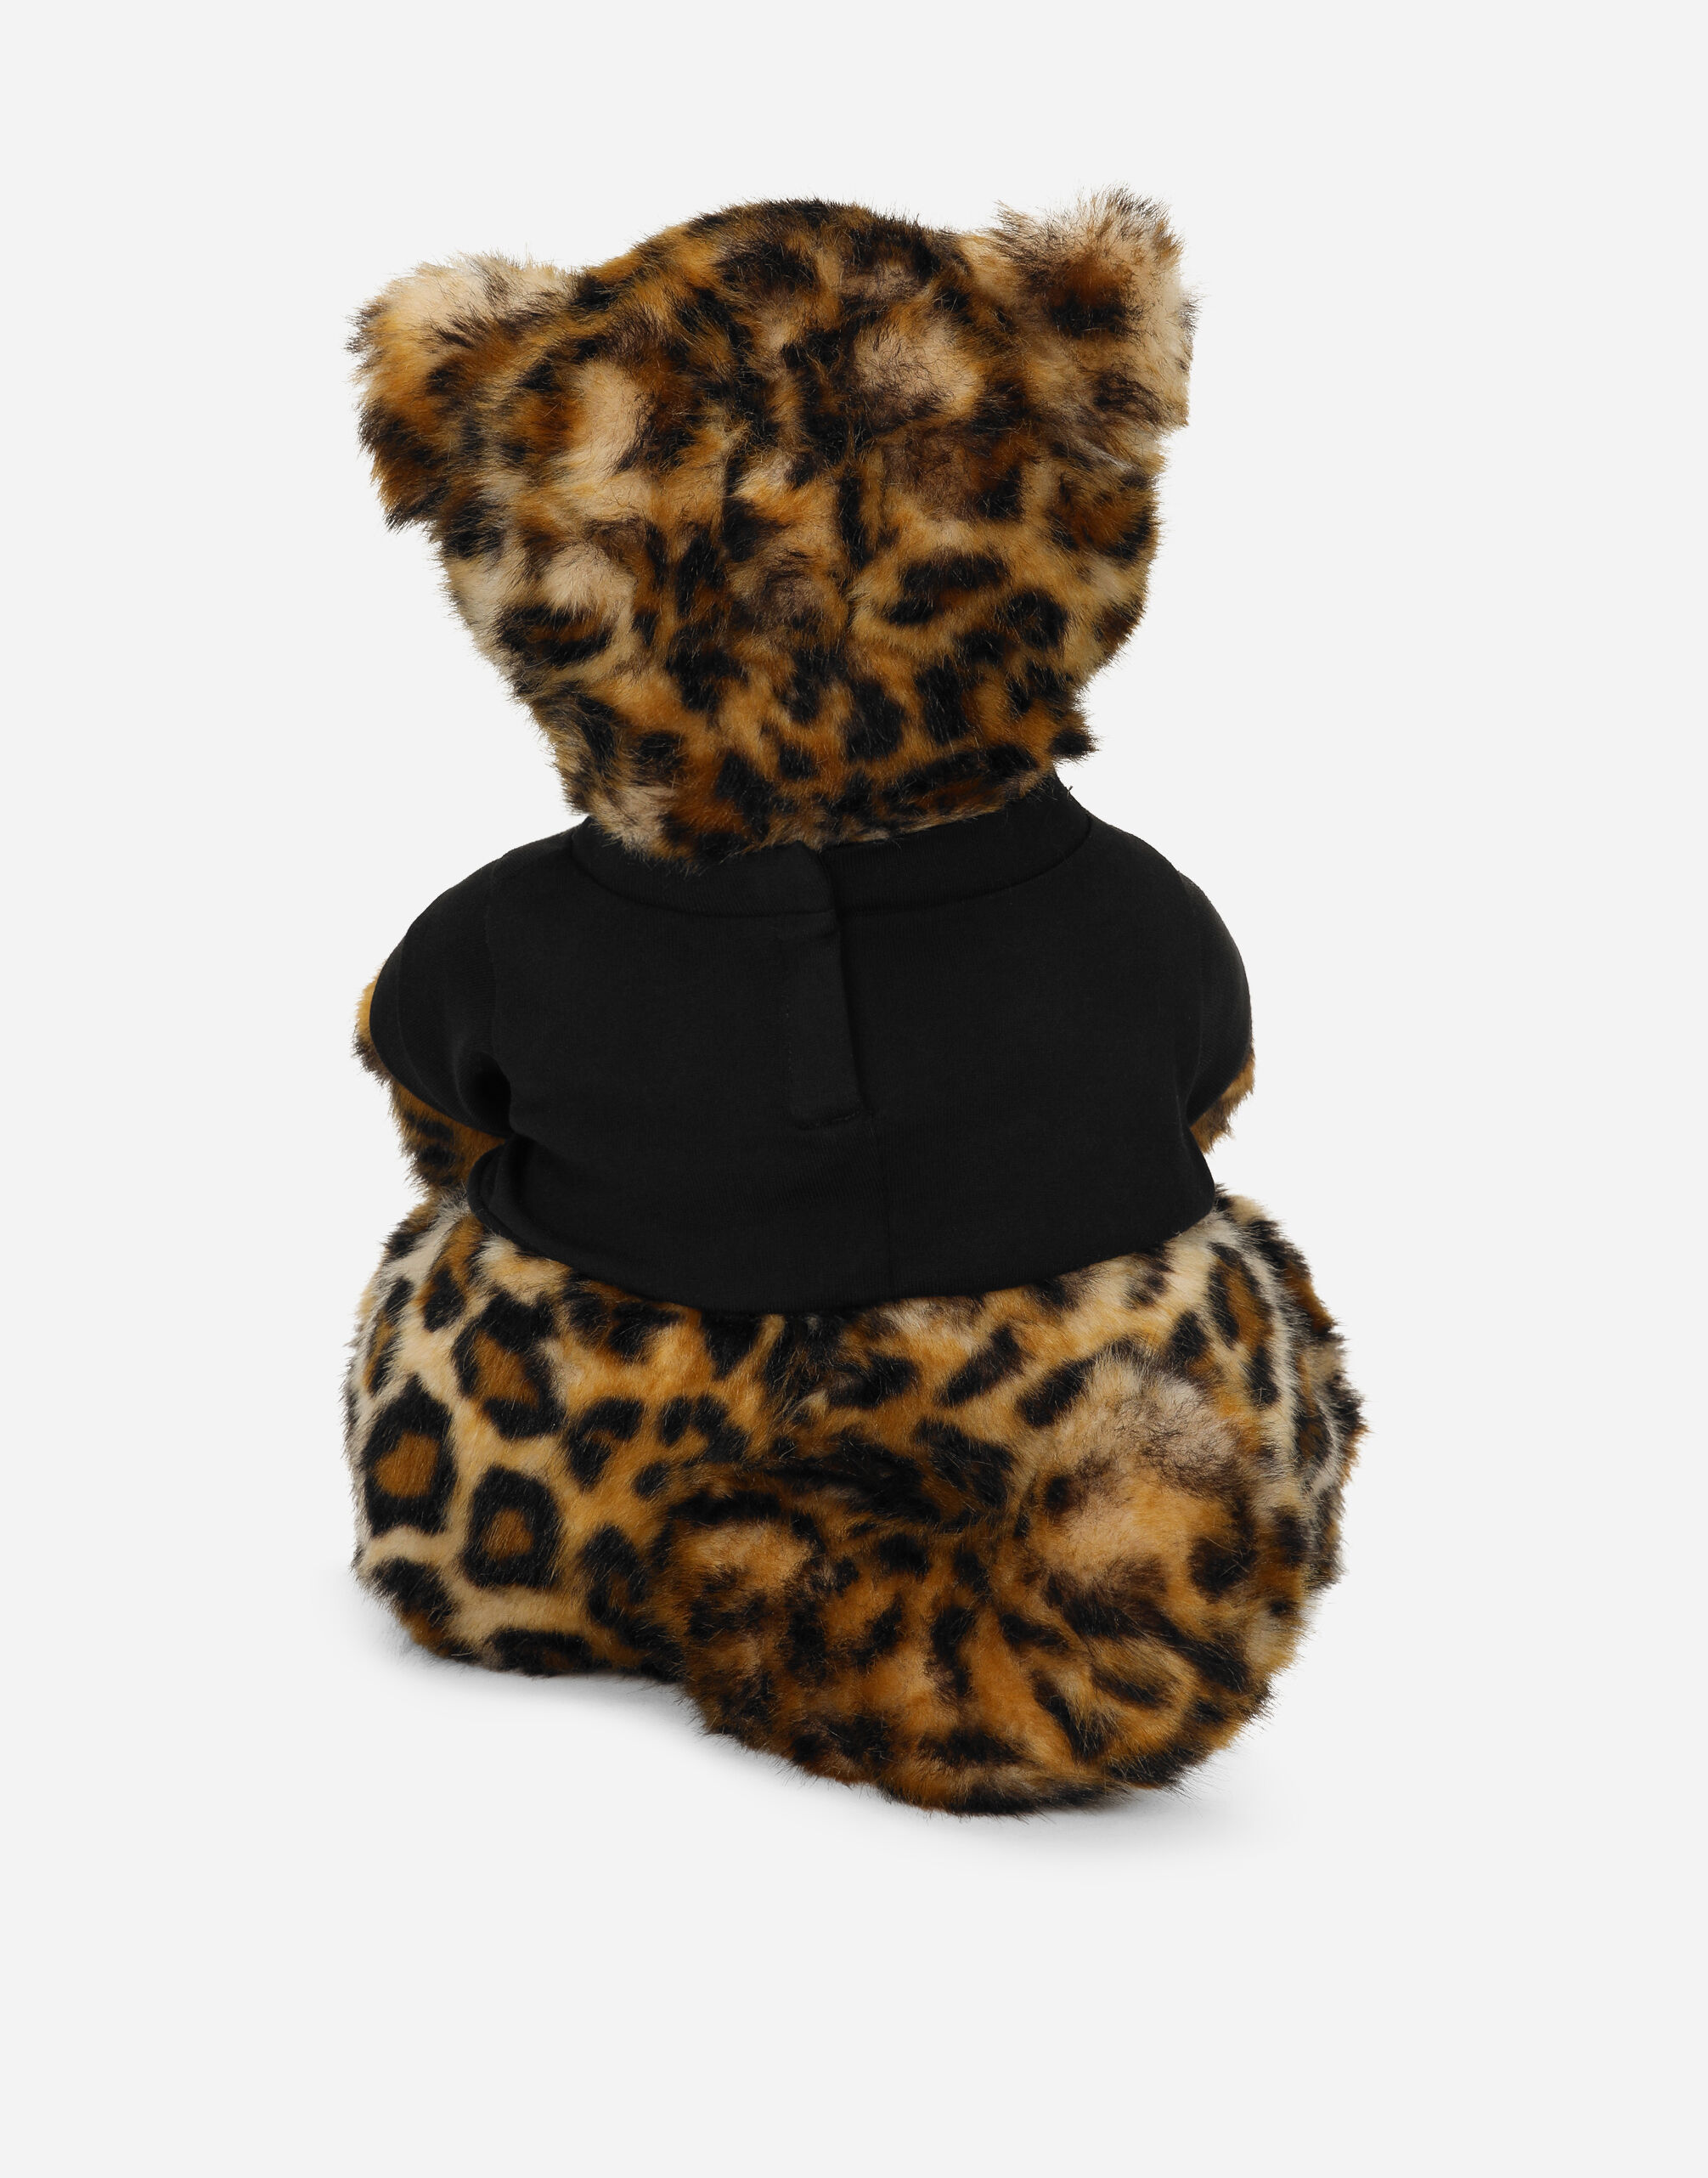 Leopard mascot soft toy